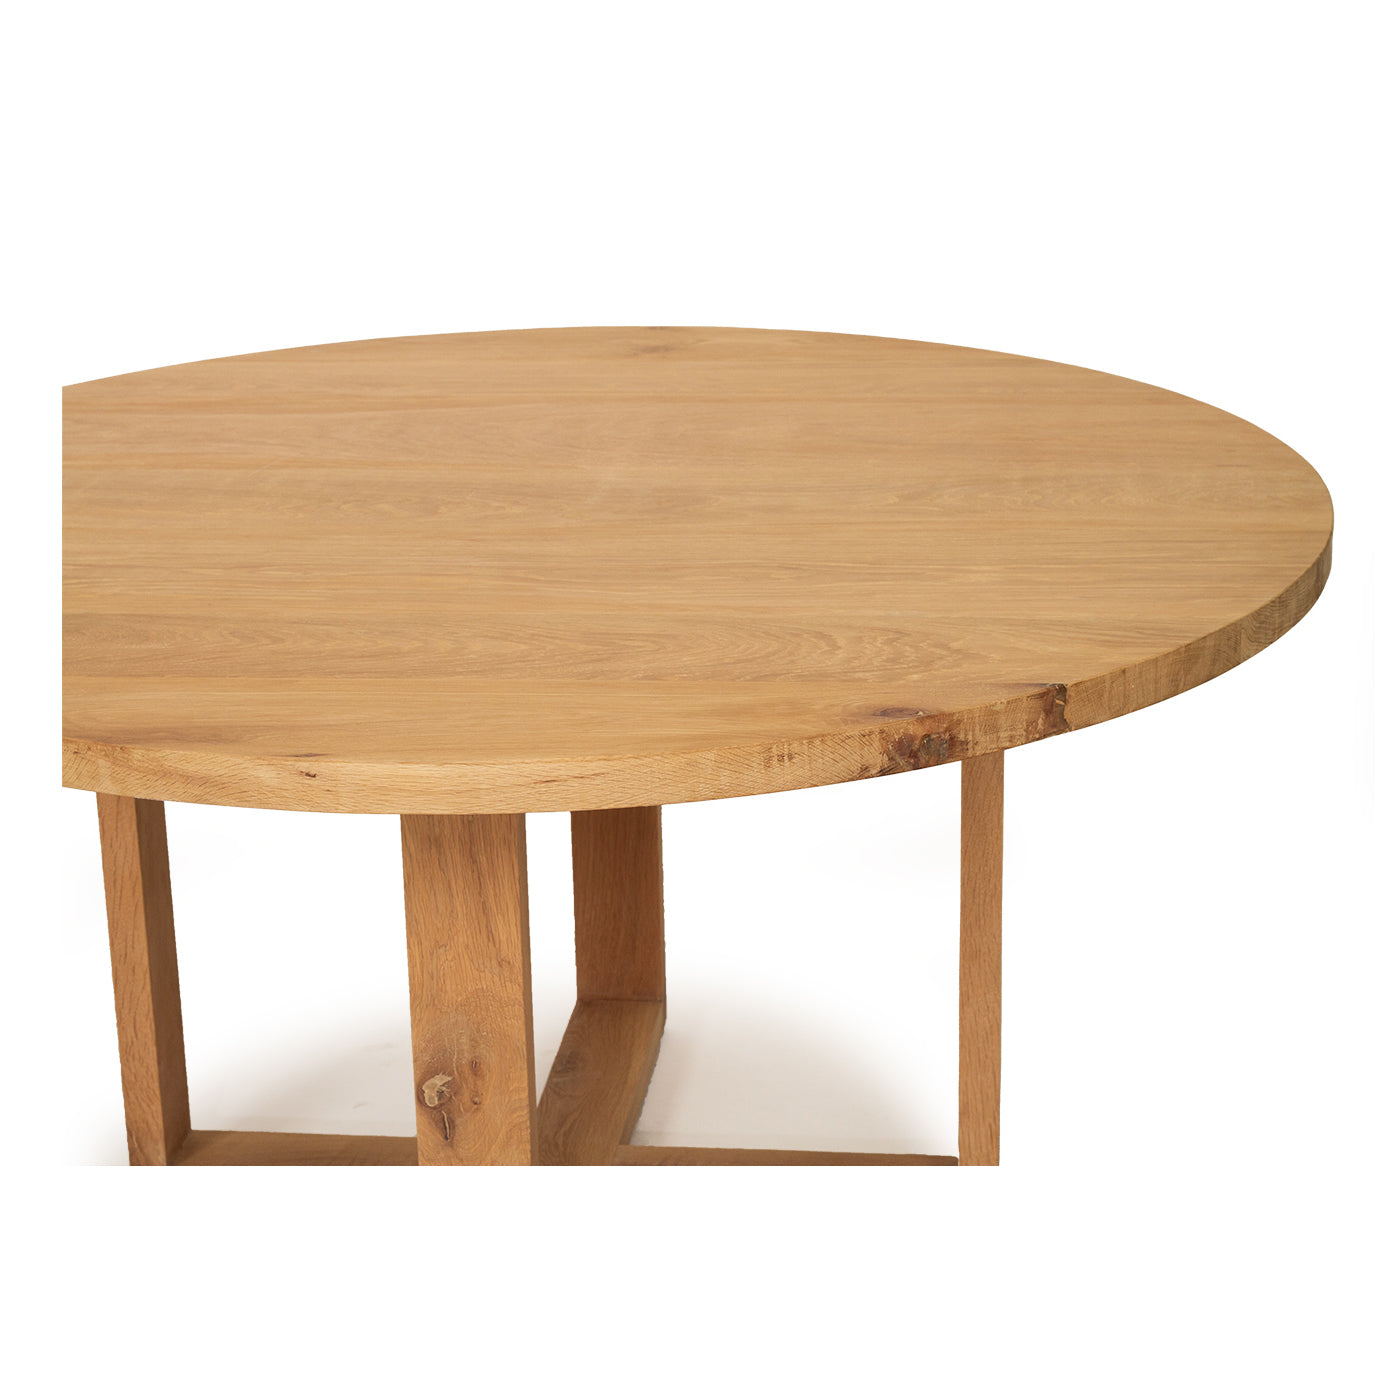 Steffan American Oak Dining Table – 150cm - Notbrand